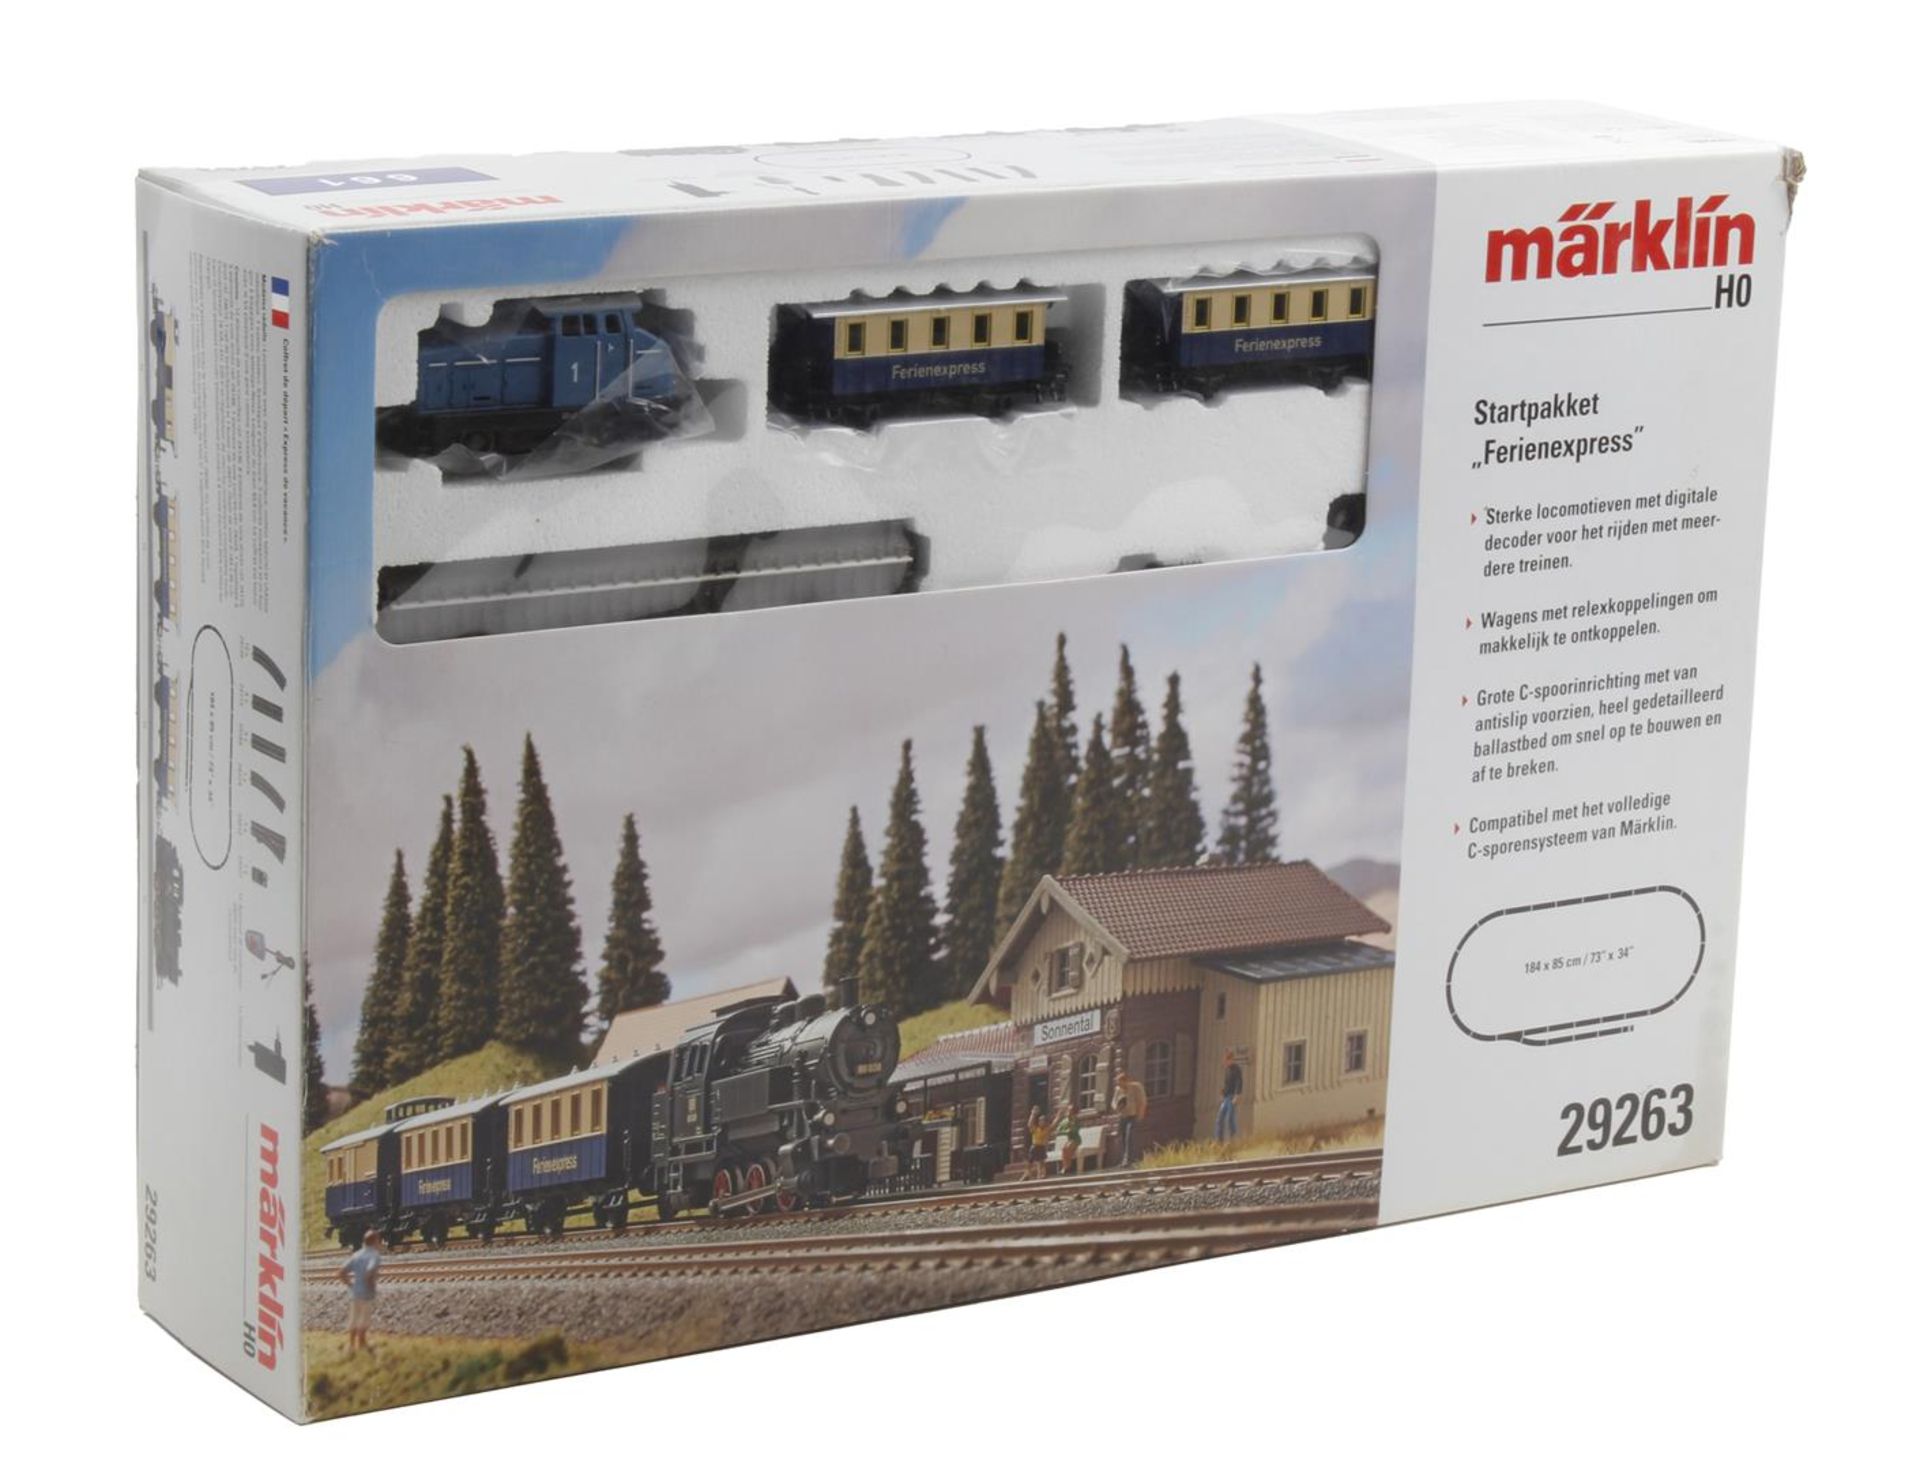 Märklin starter package